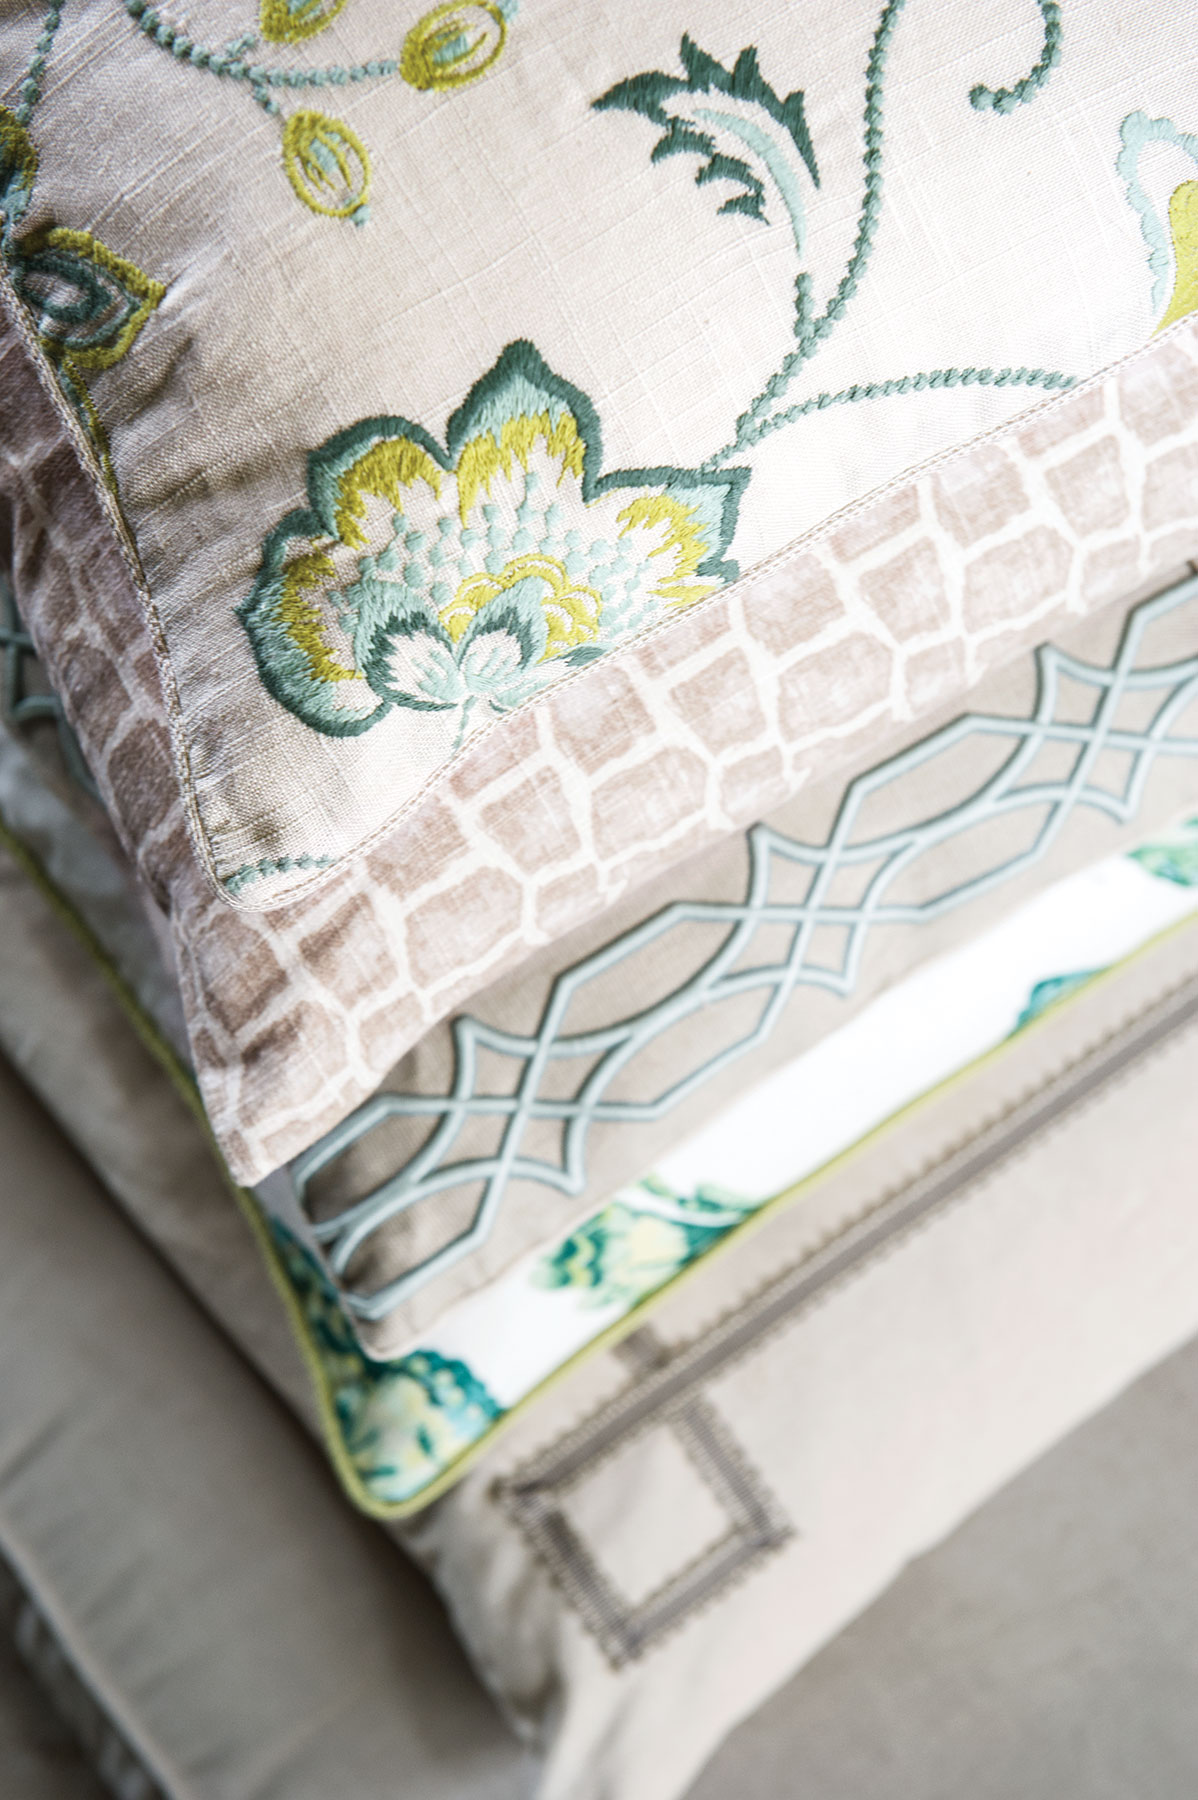 Charlotte Moss Fabricut patterns on pillows